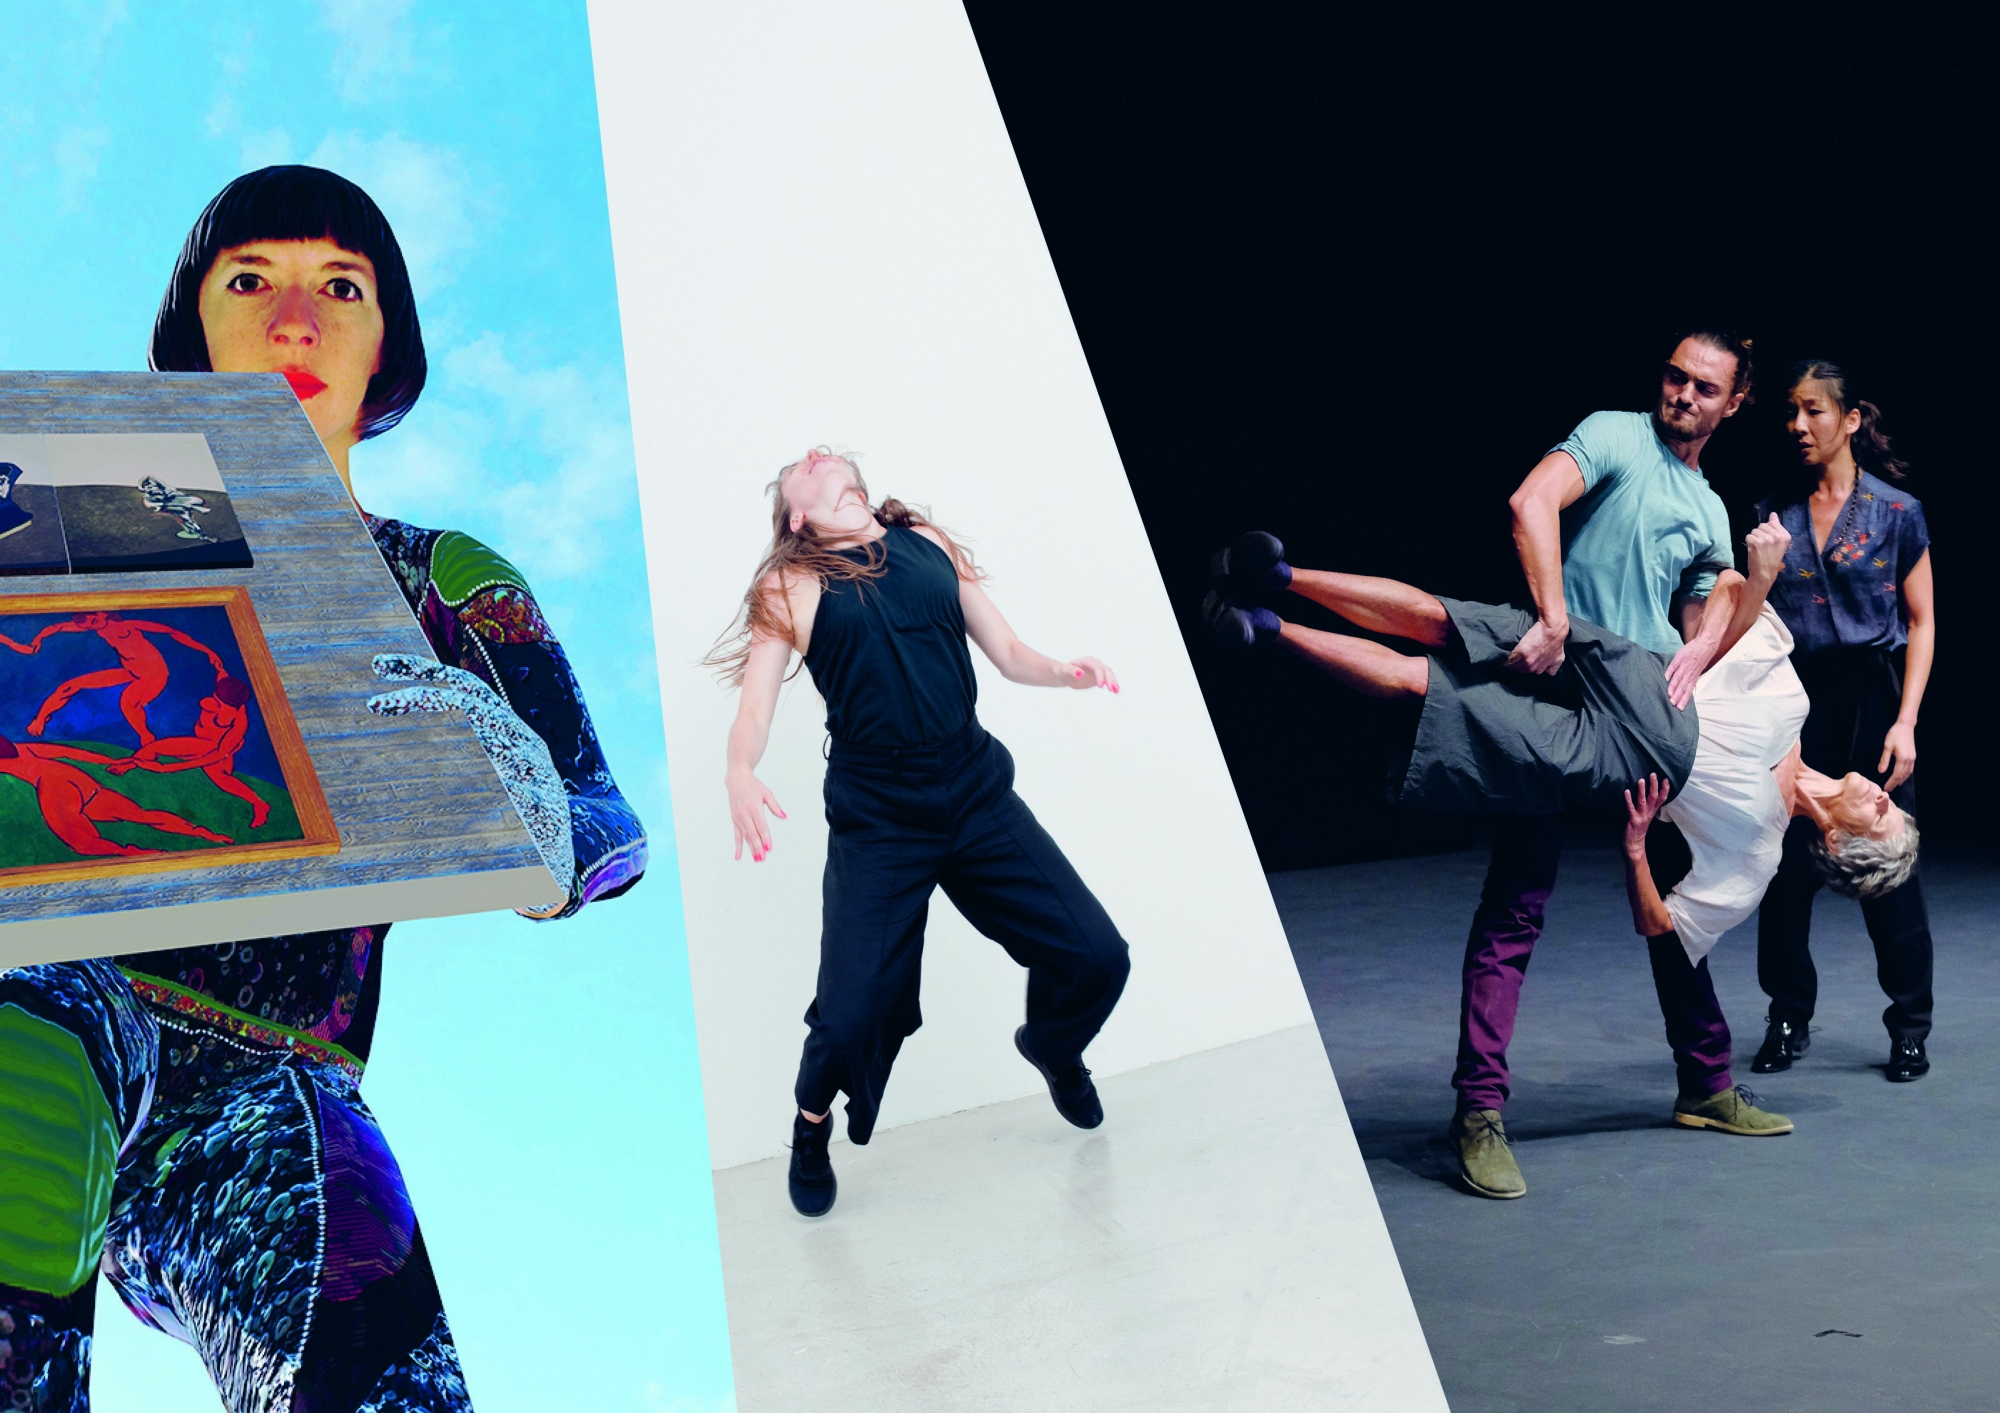 De gauche à droite: la compagnie Gilles Jobin, Tabea Martin, et la compagnie Zeitsprung, tous trois programmés dans la nouvelle saison d'Hiver de danses.